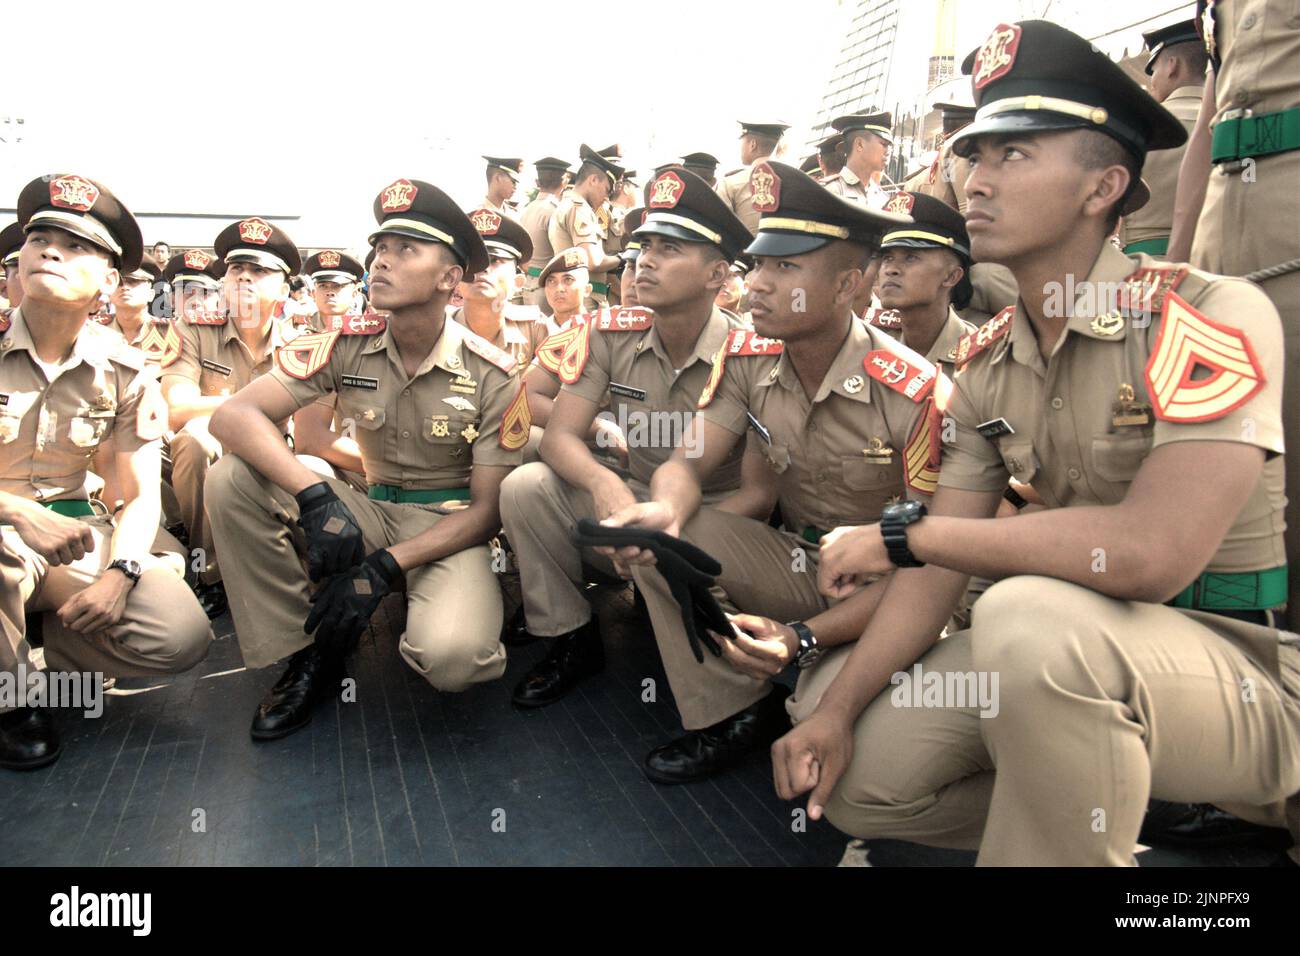 Des cadets et des officiers de la marine indonésienne assistent à un briefing, photographiés par KRI Dewaruci (Dewa Ruci), un grand navire indonésien, alors que la goélette de type barquentine est ouverte aux visiteurs du port de Kolinlamil (port de la marine) à Tanjung Priok, dans le nord de Jakarta, en Indonésie. Banque D'Images